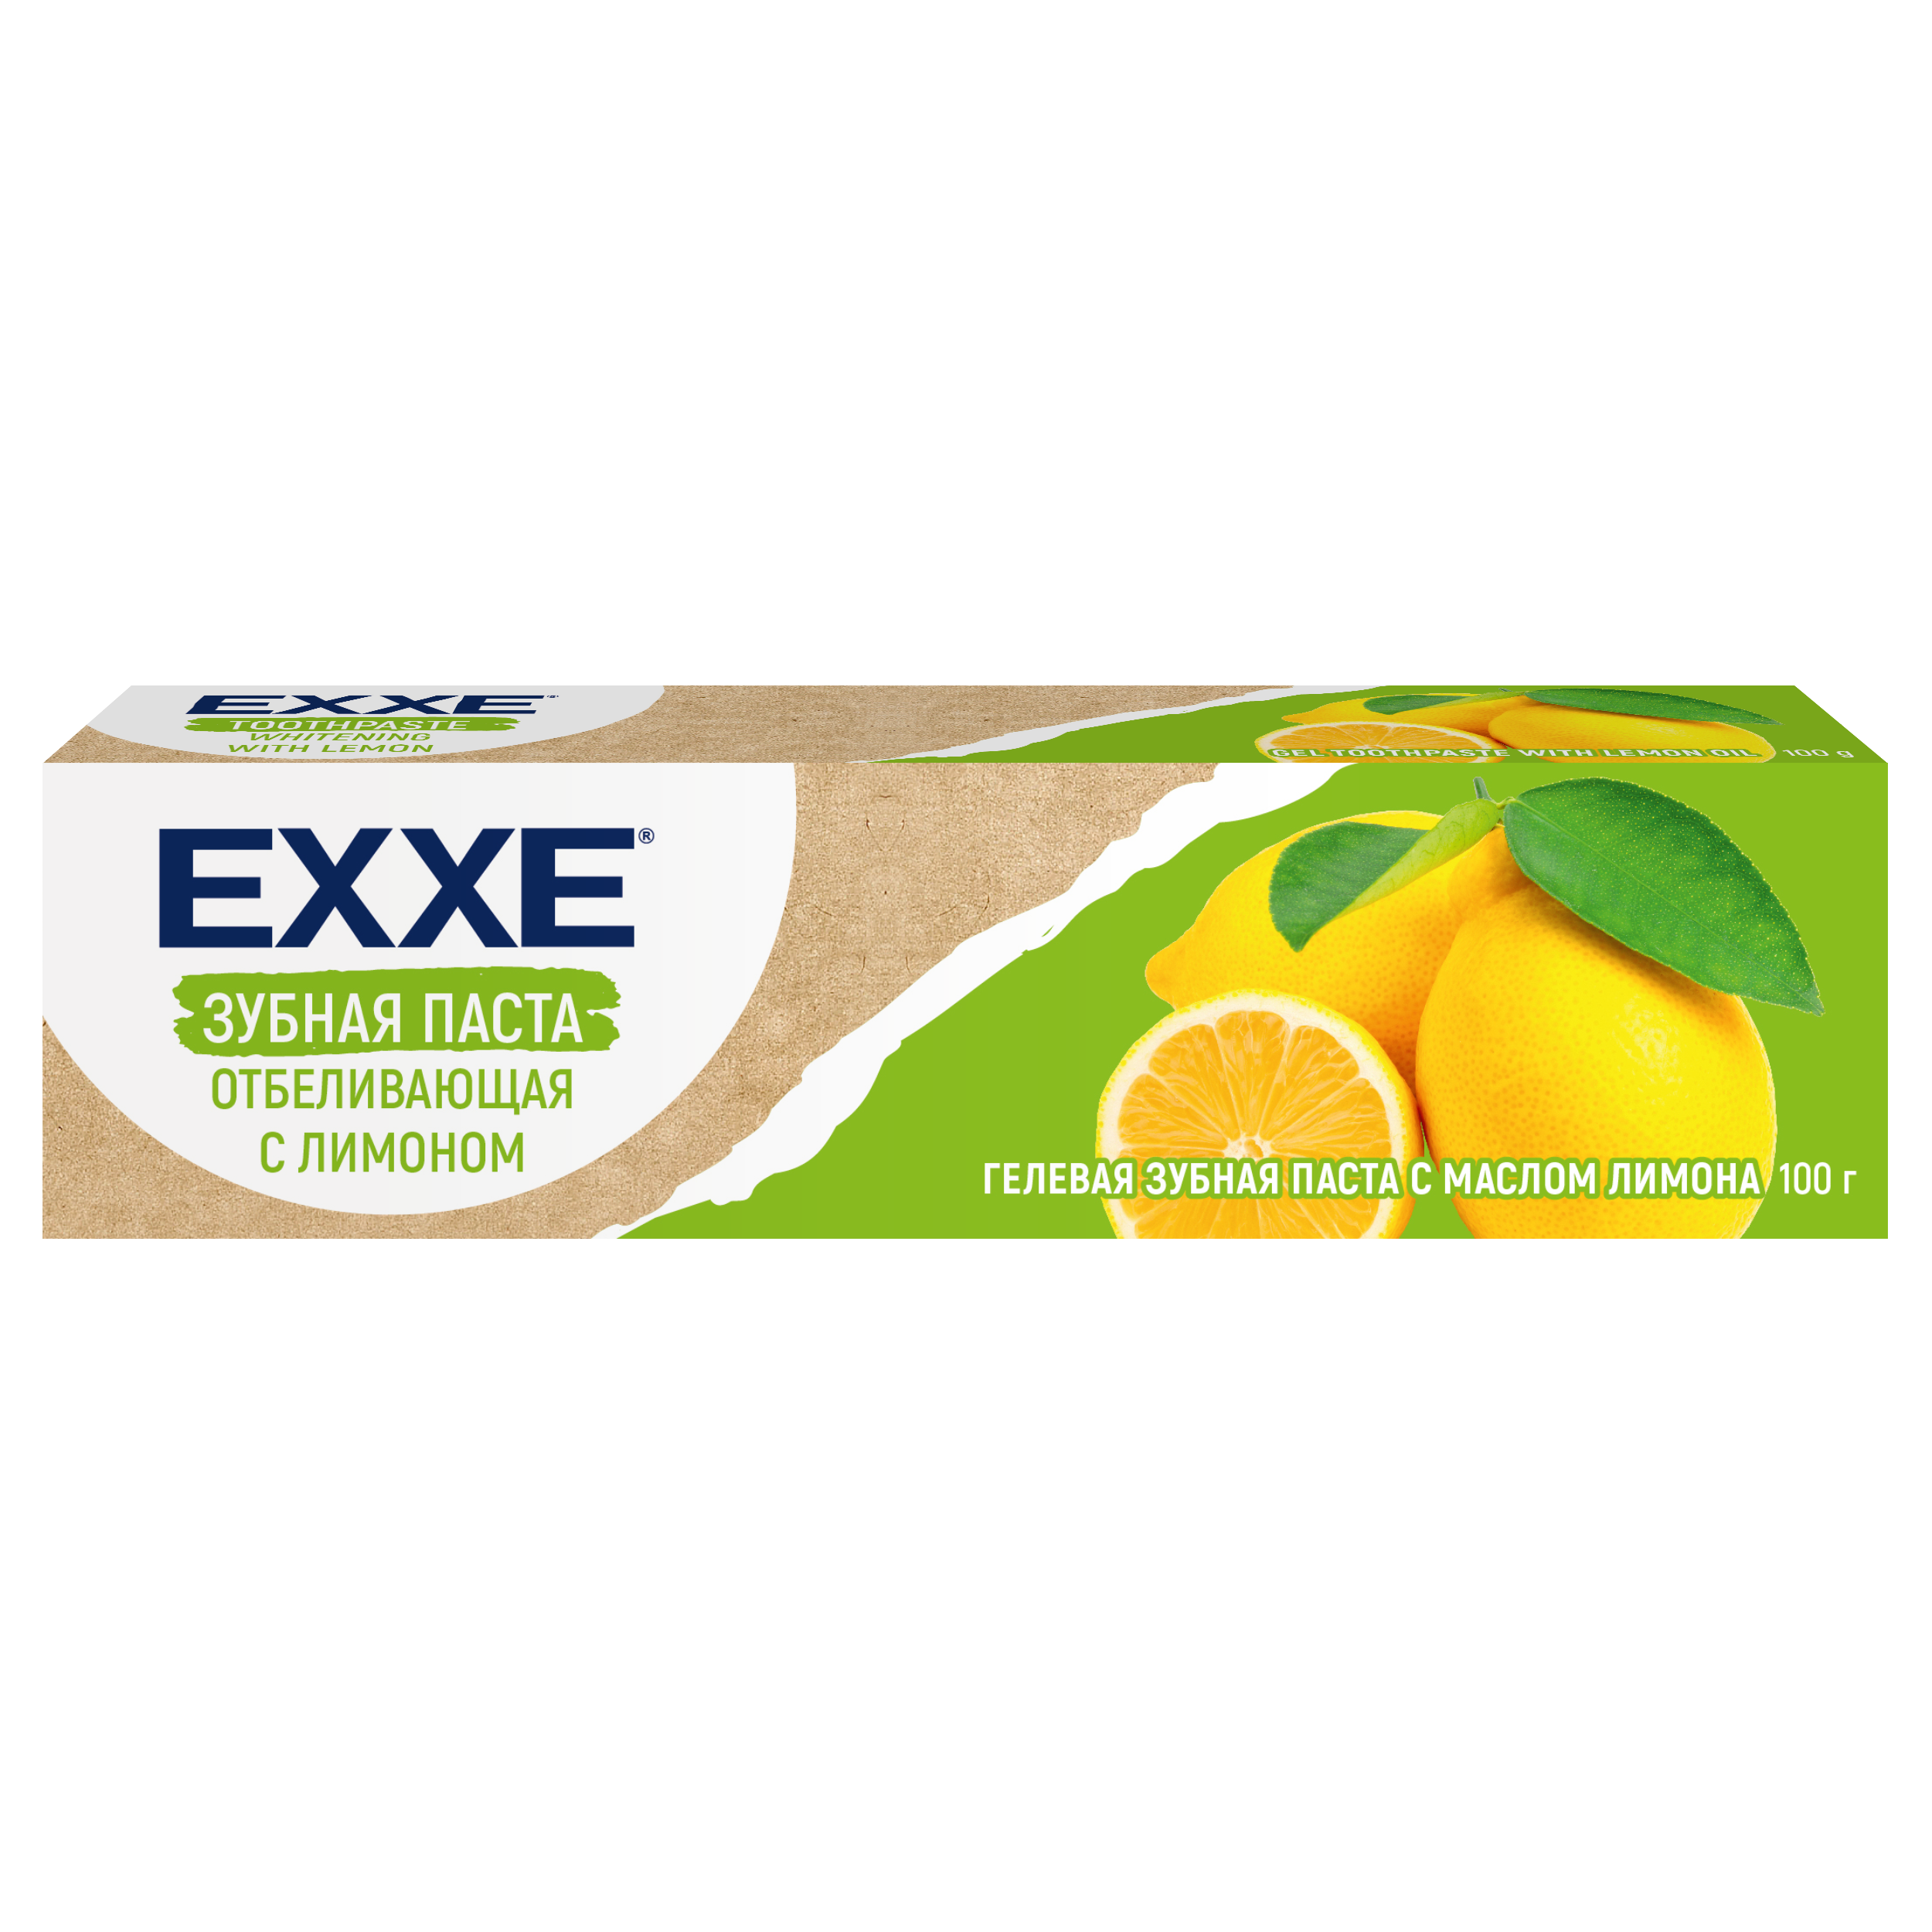 Зубная паста Exxe Отбеливающая с лимоном, 100 г зубная паста экстра отбеливание с лимоном 100 г